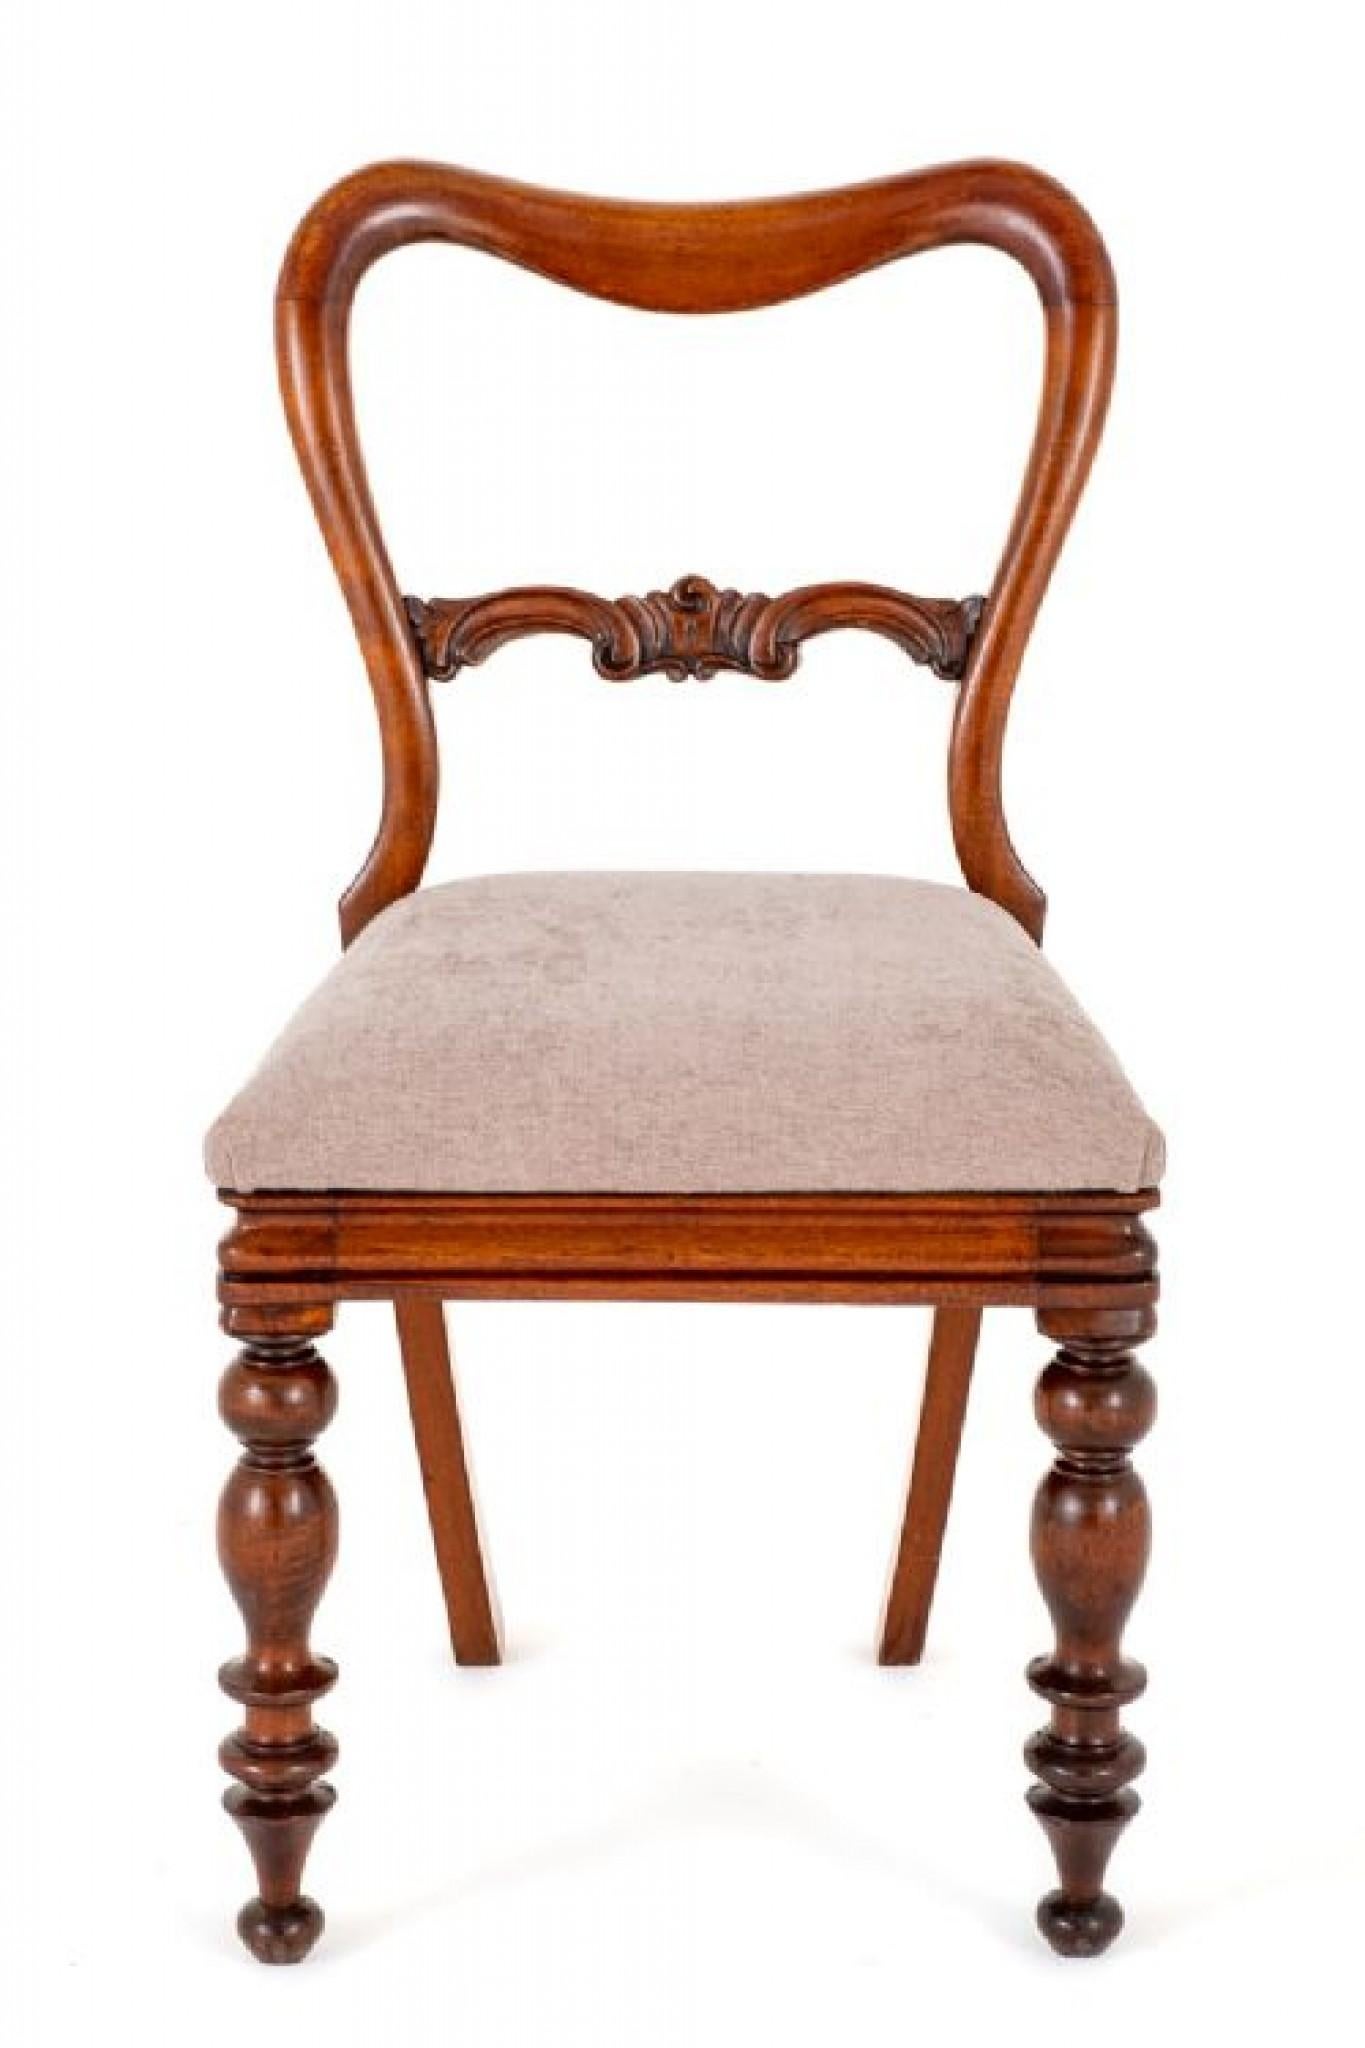 Ensemble de 6 chaises de salle à manger victoriennes en acajou.
Circa 1850
Ces chaises ont des pieds avant tournés et des pieds arrière en sabre.
Les chaises sont dotées de sièges relevables récemment retapissés.
Il est doté d'un dossier en forme,